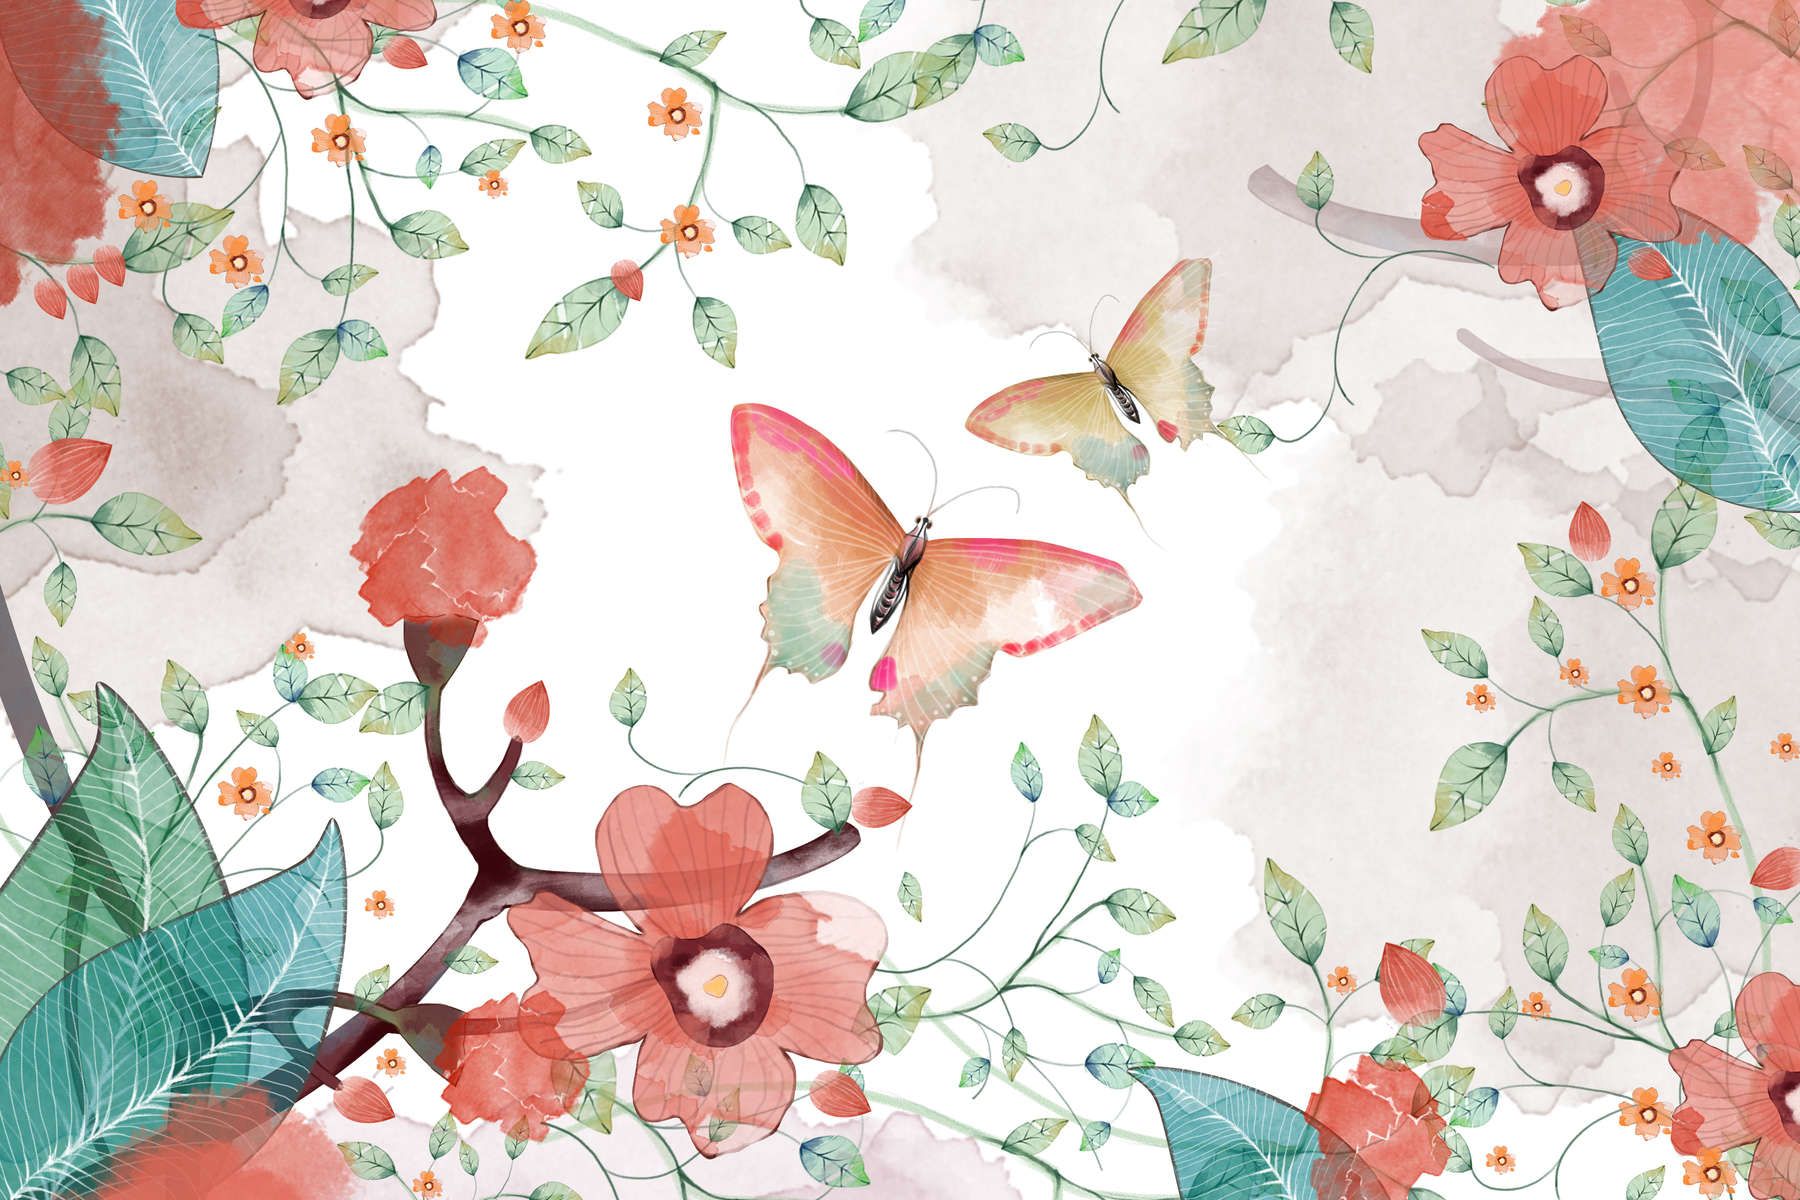             papiers peints à impression numérique floral avec feuilles et papillons - intissé lisse & mat
        